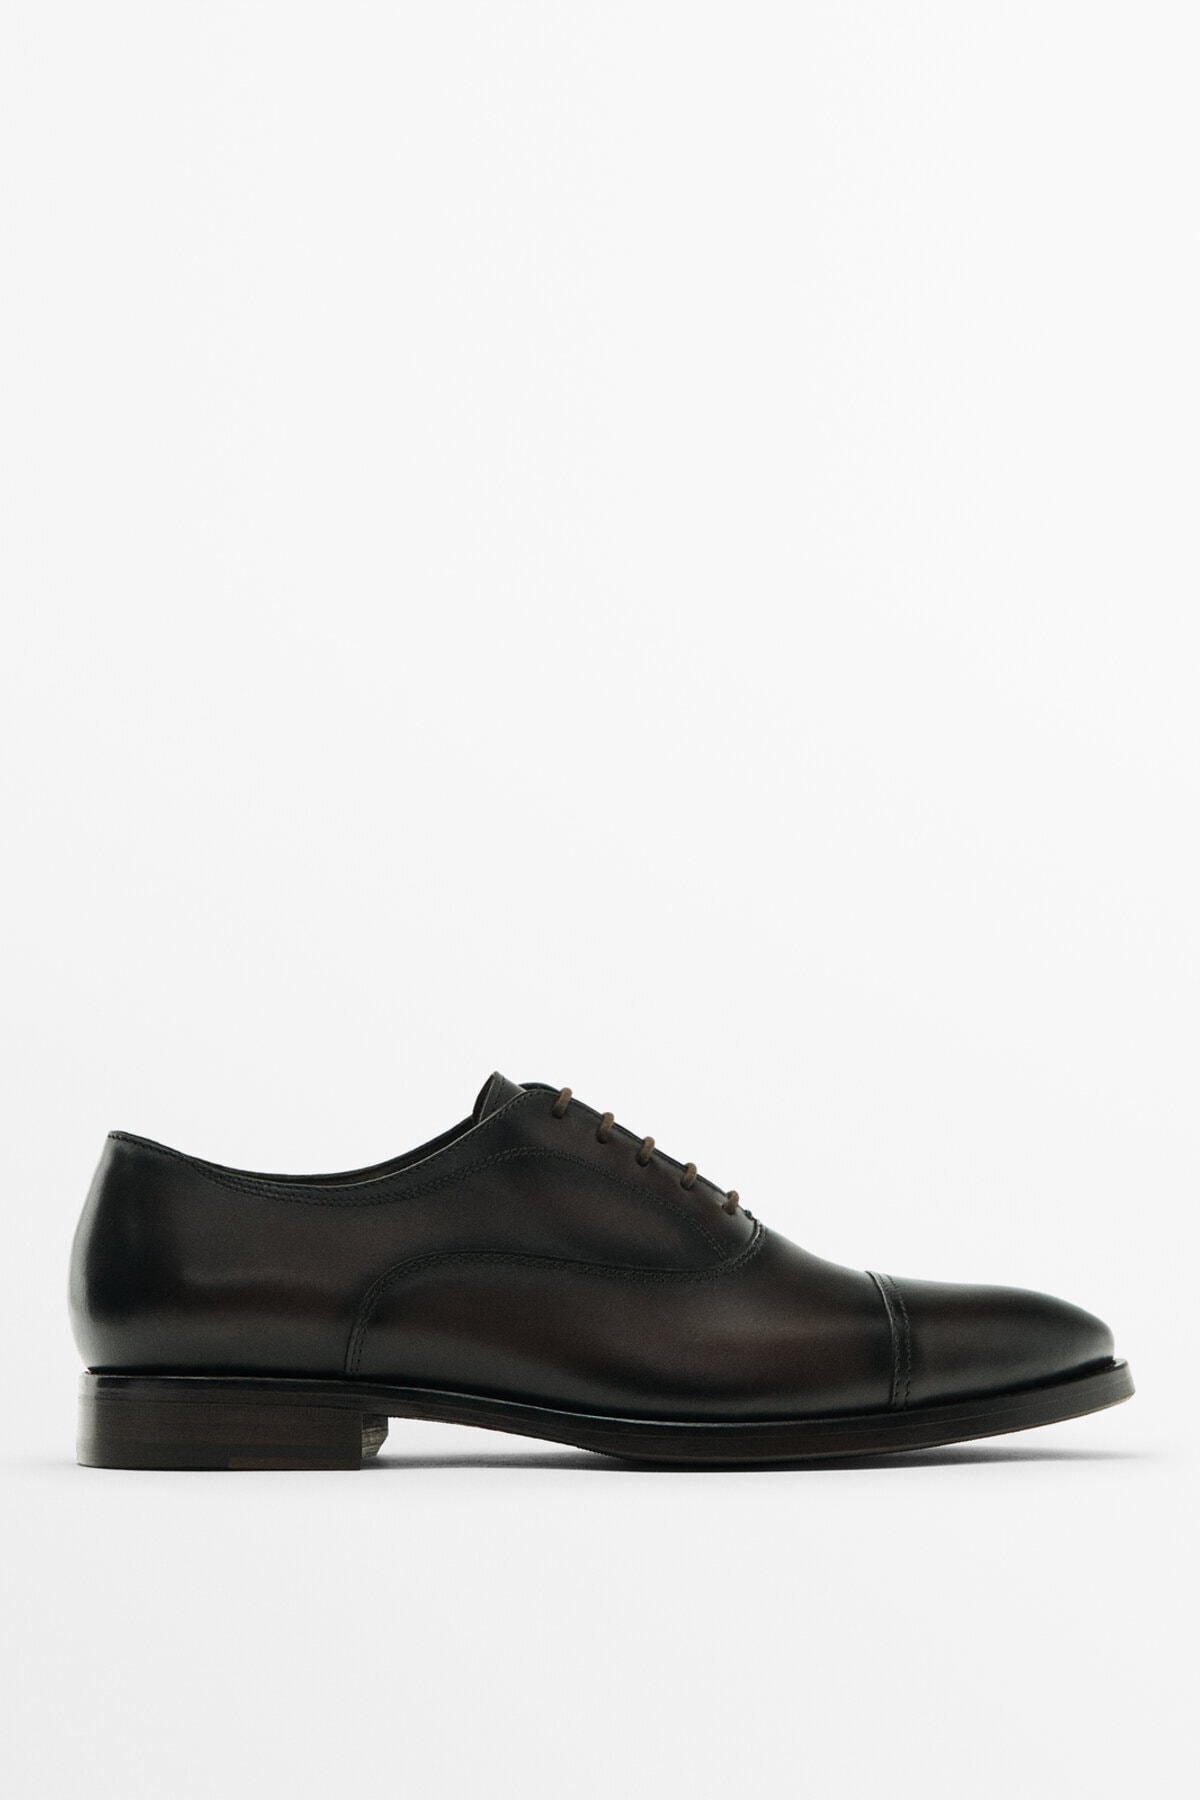 Massimo Dutti Leather Shoes